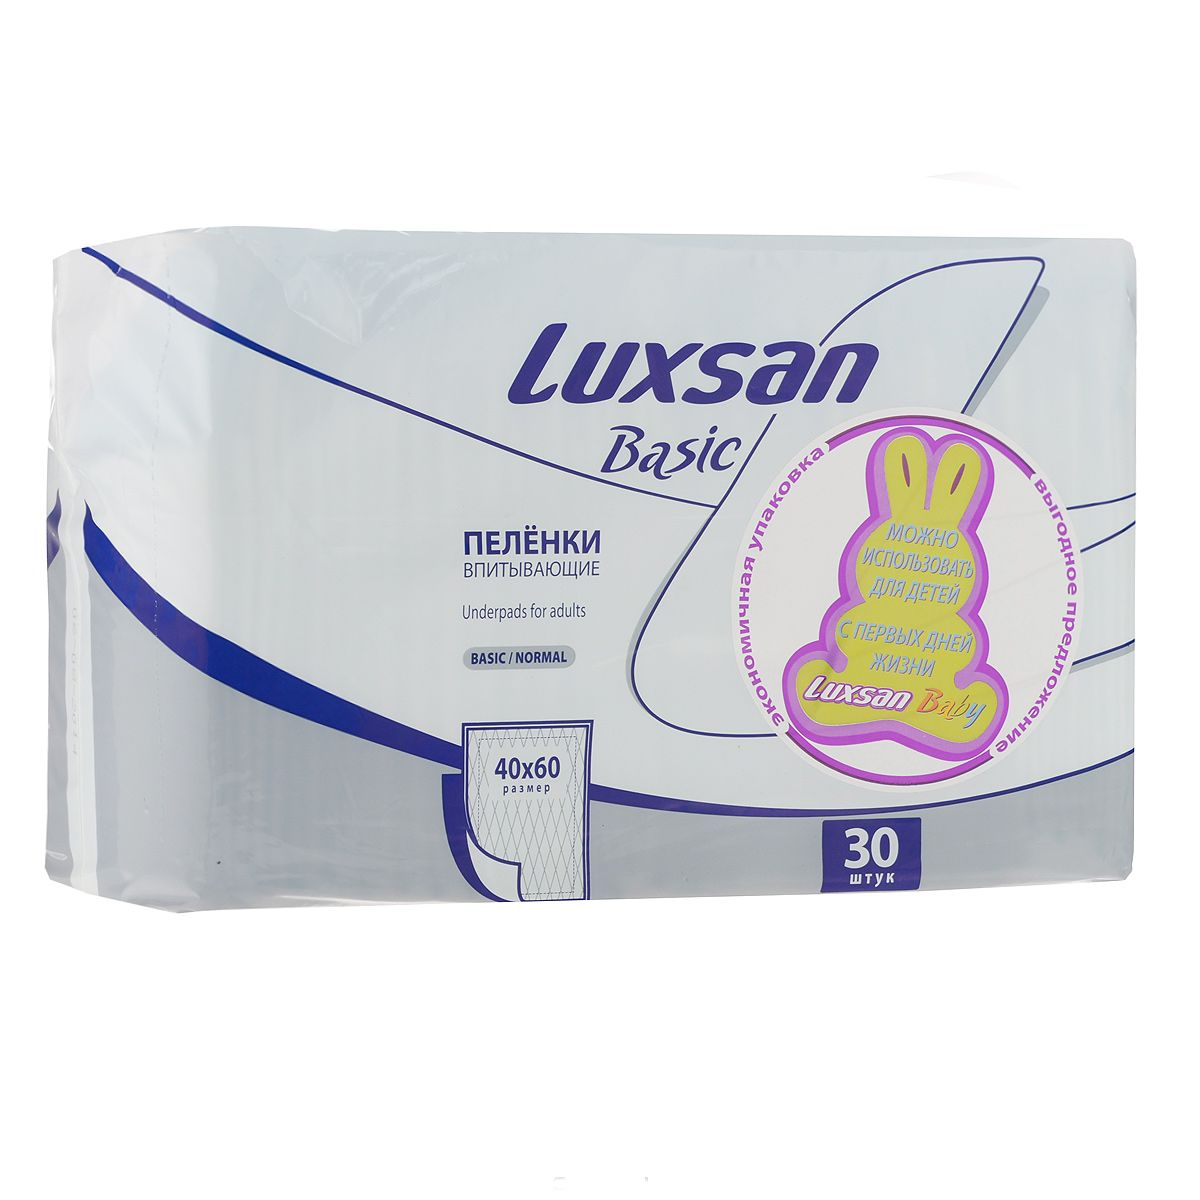 Пеленки впитывающие одноразовые Luxsan Basic/Normal (40 x 60 см) - 30 шт